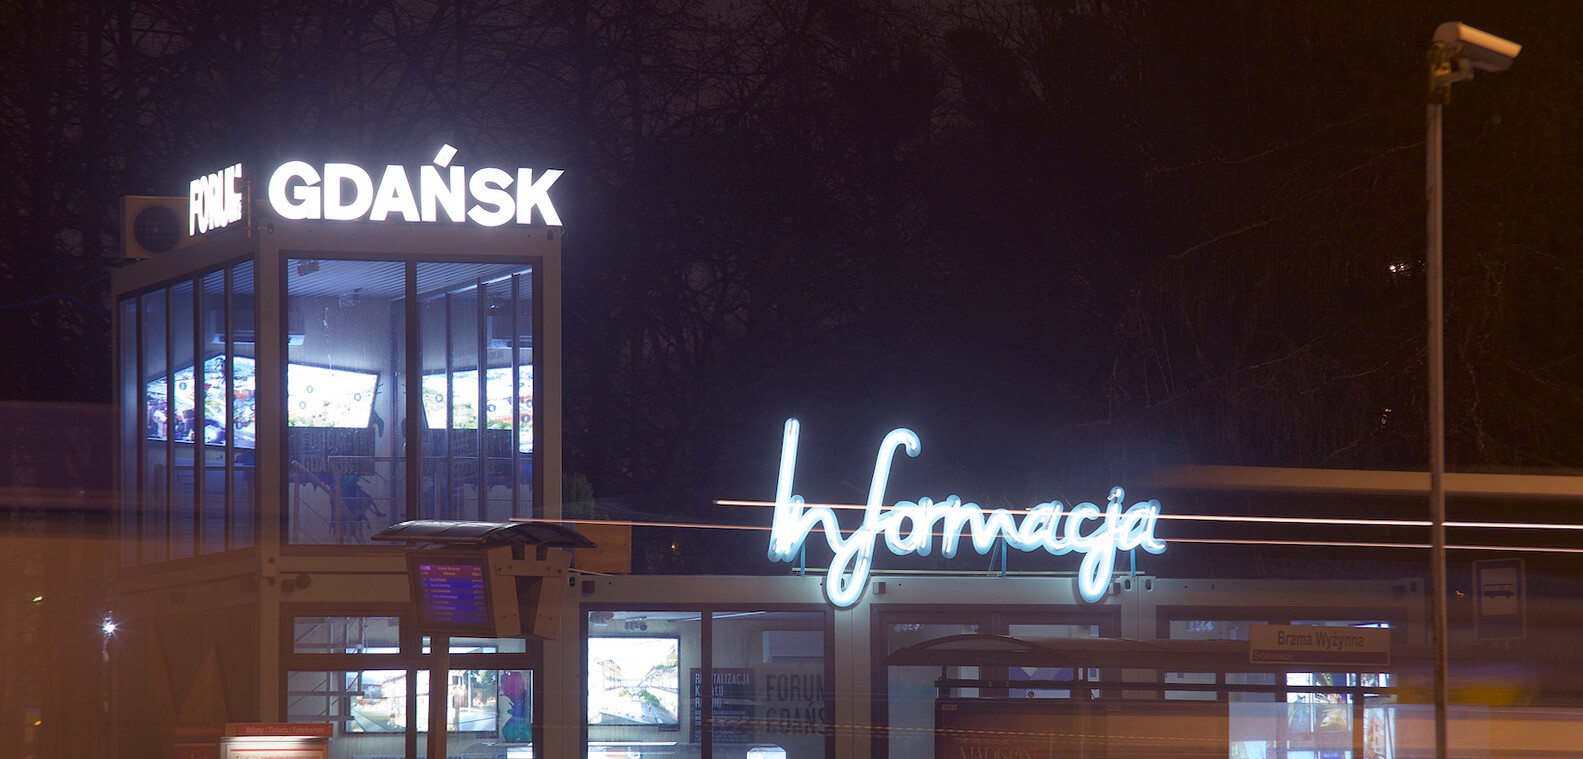 Danzig Forum Informationen - Danziger Forum - Informationsschilder aus Leuchtreklamen, auf einem Rahmen montiert, über dem Eingang angebracht